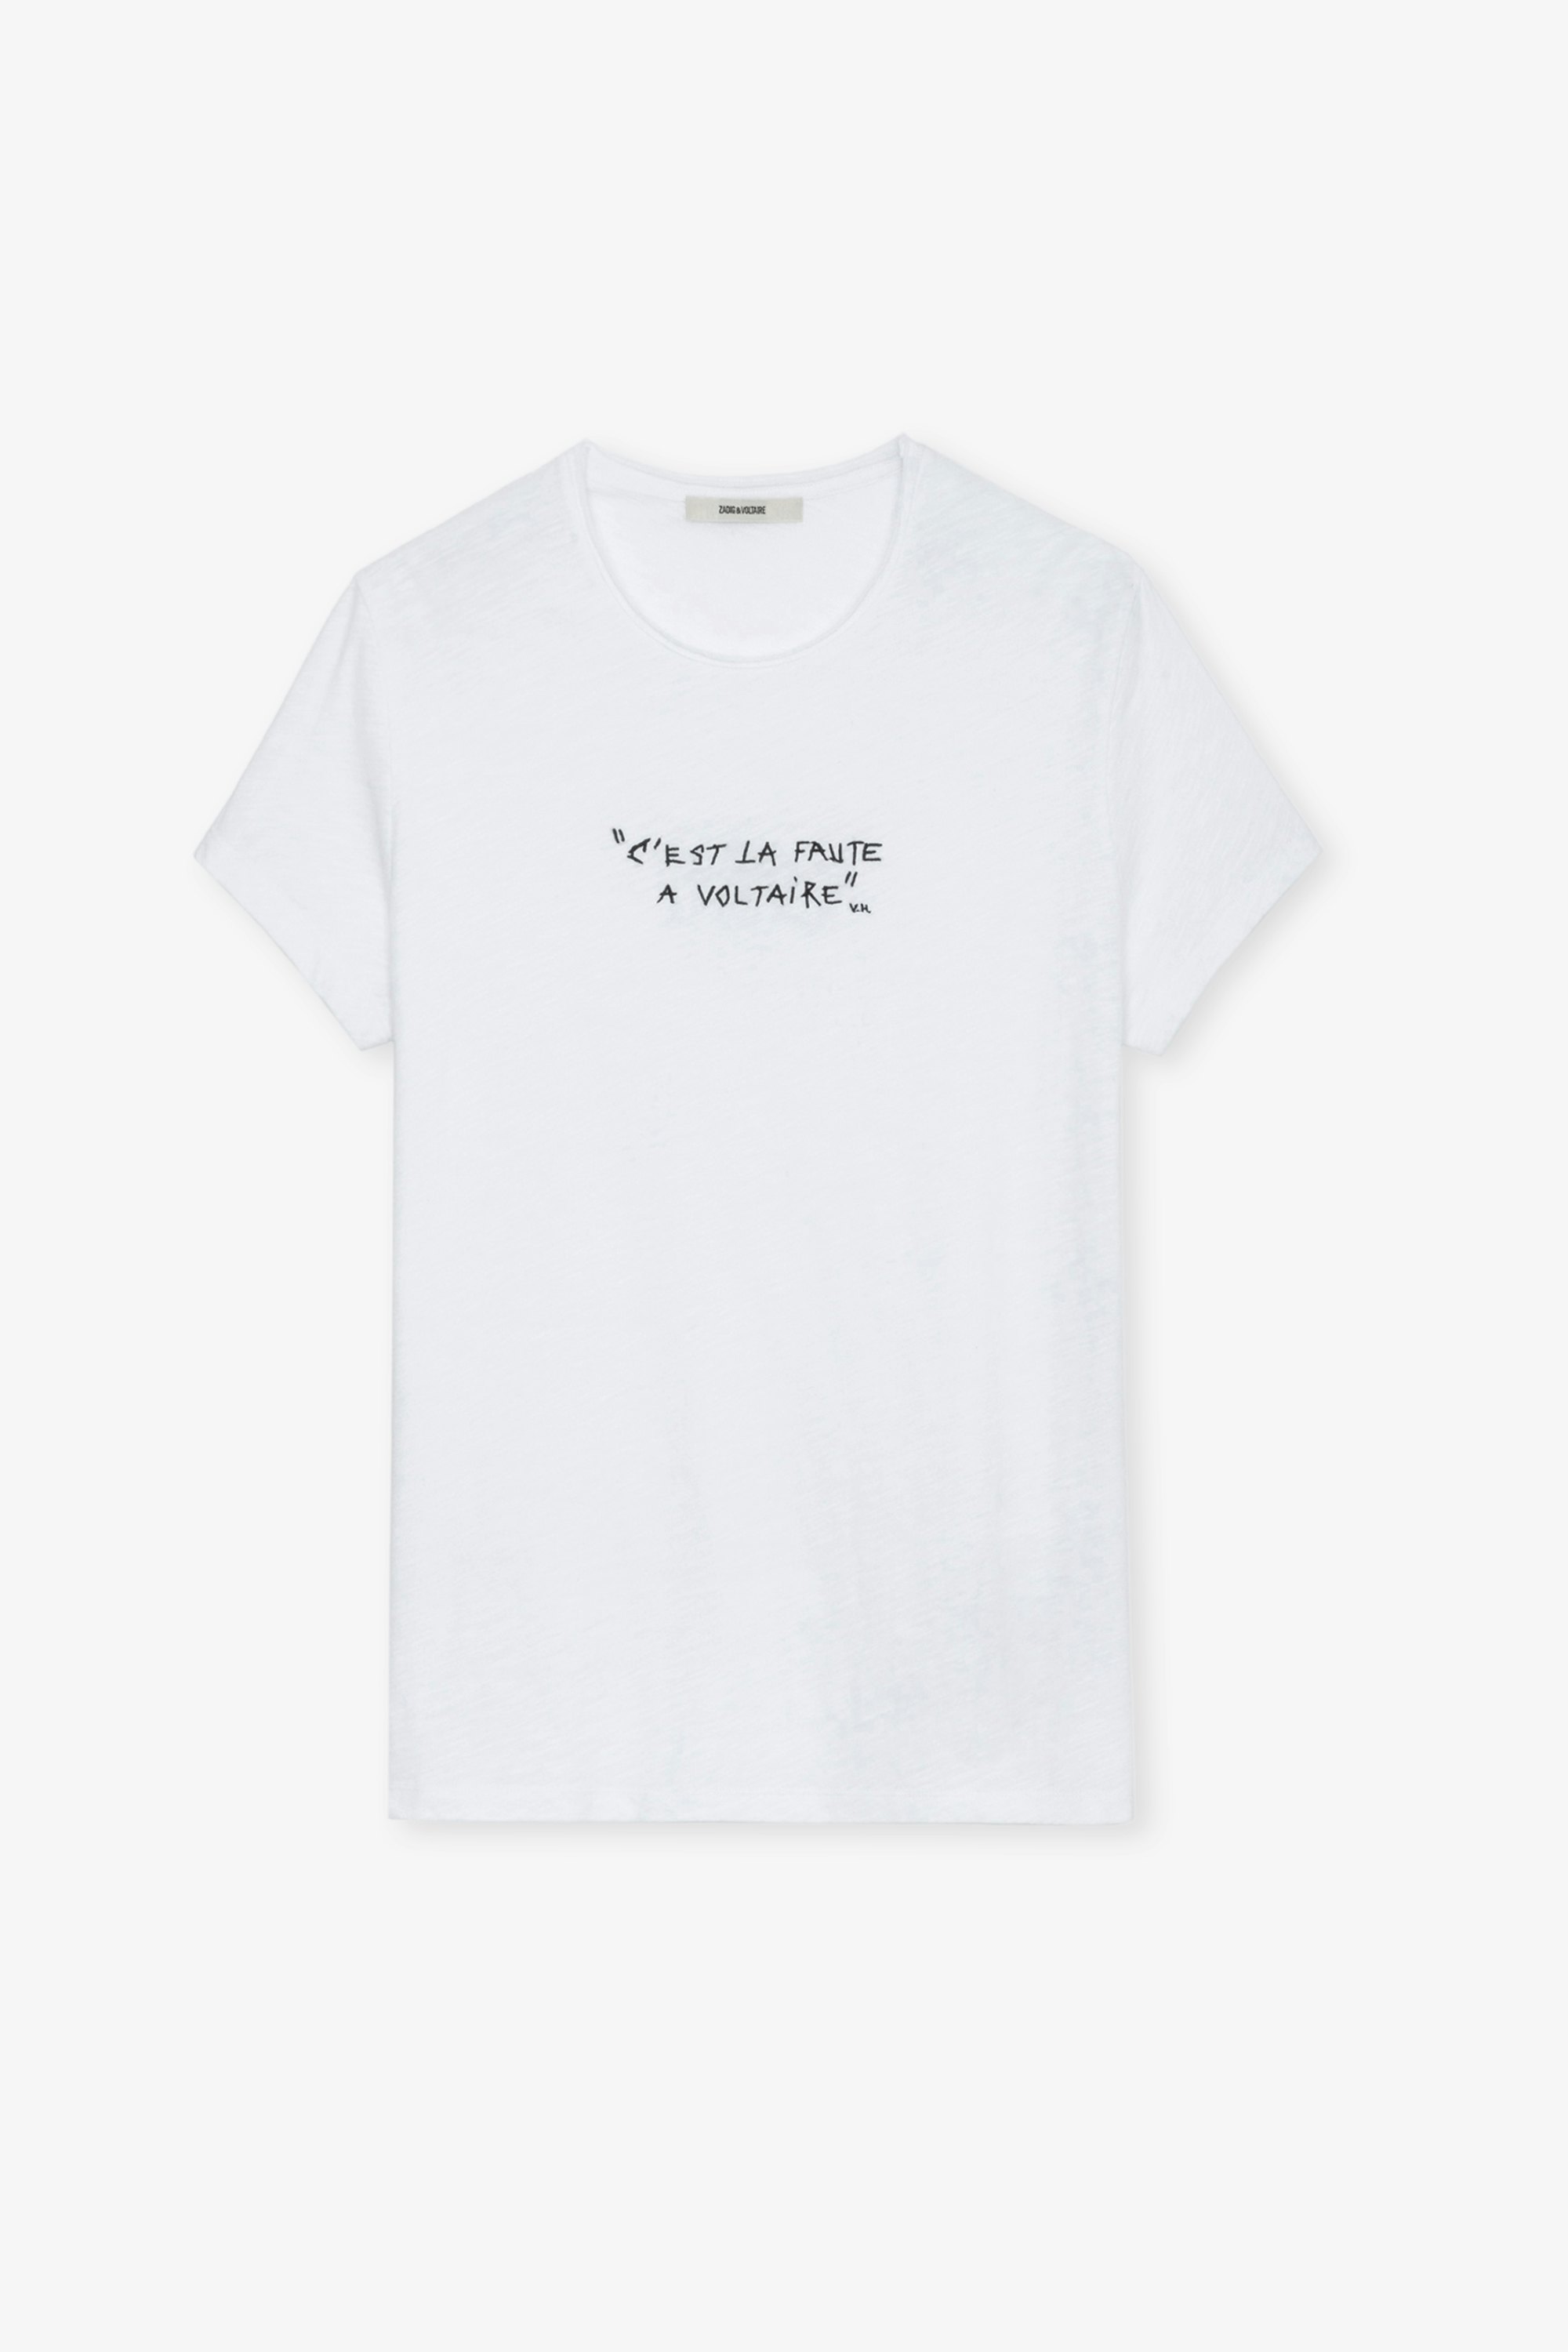 Camiseta Toby jaspeada - Camiseta blanca de algodón jaspeado para hombre con inscripción "C'est la faute à Voltaire".